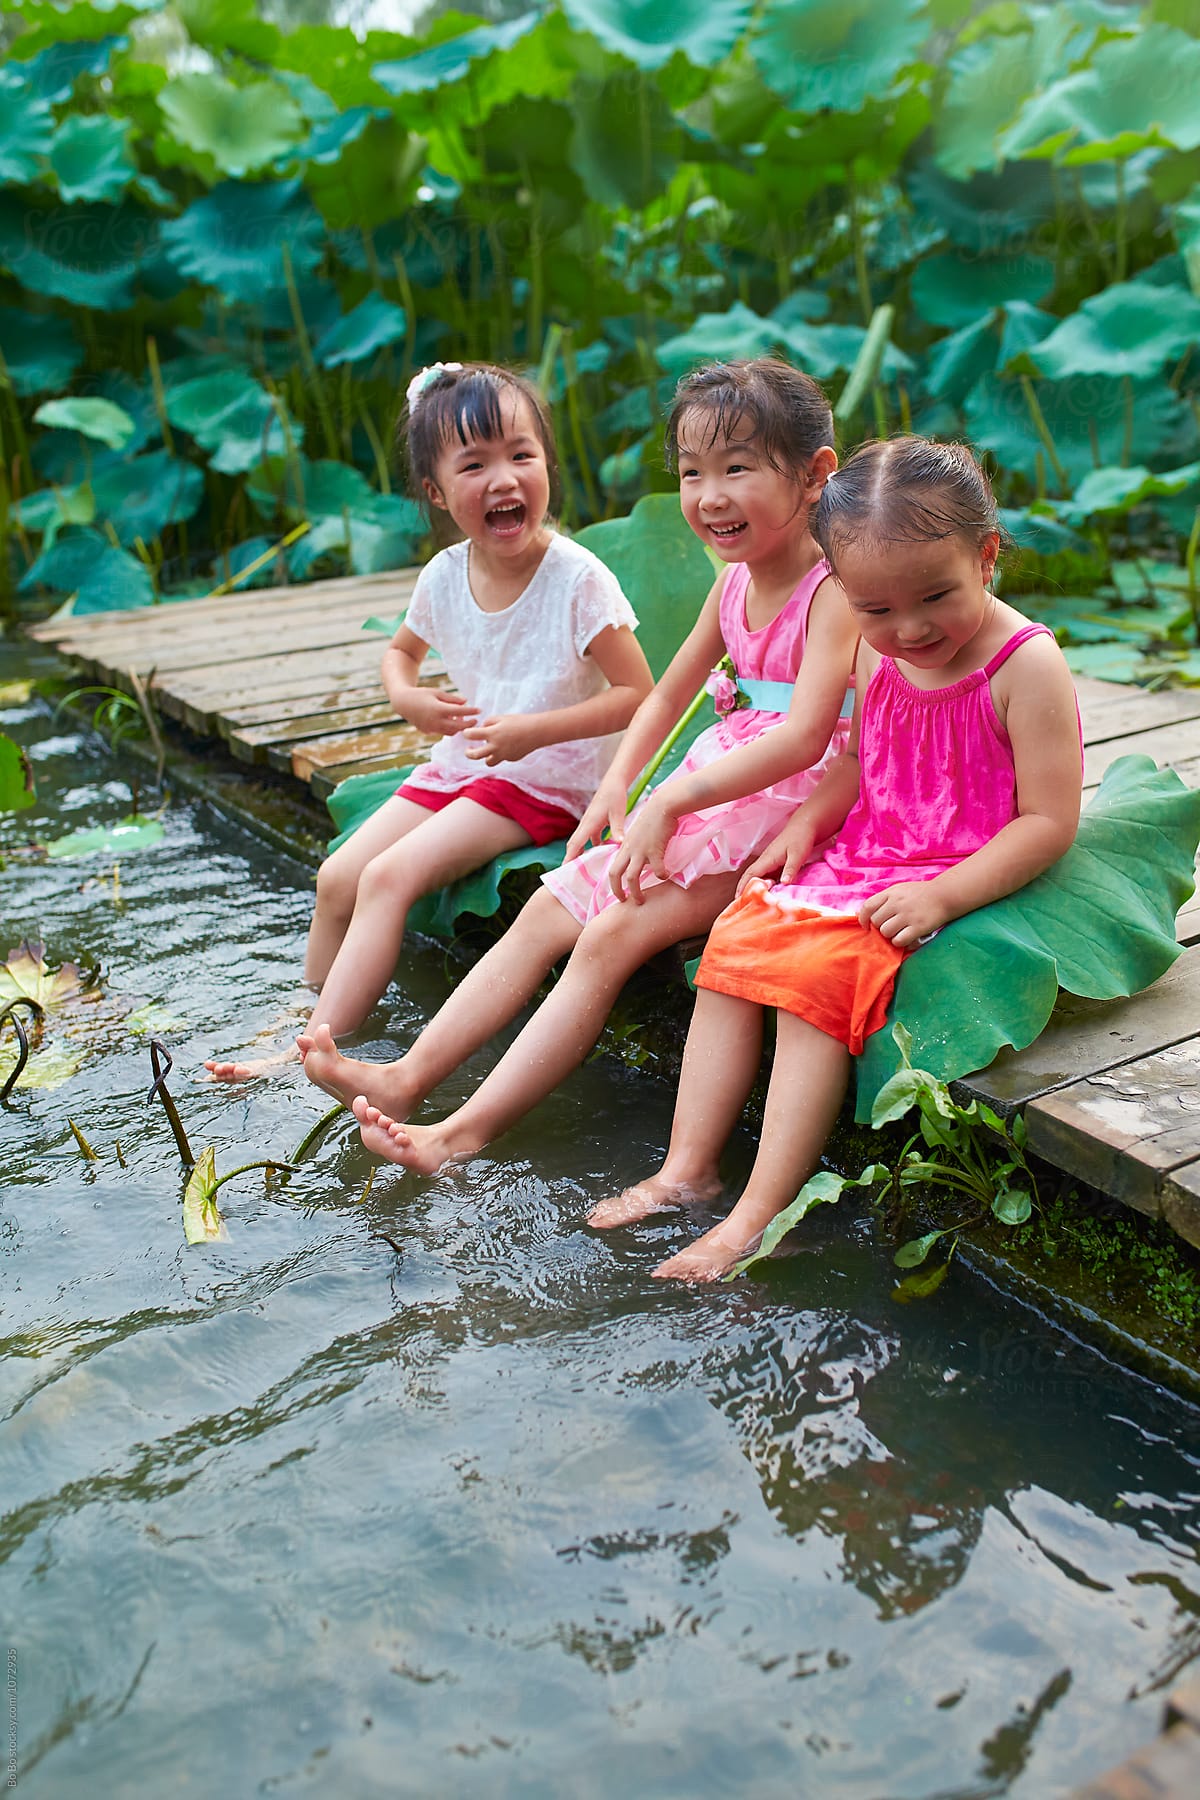 Happy childhood at summer pond side